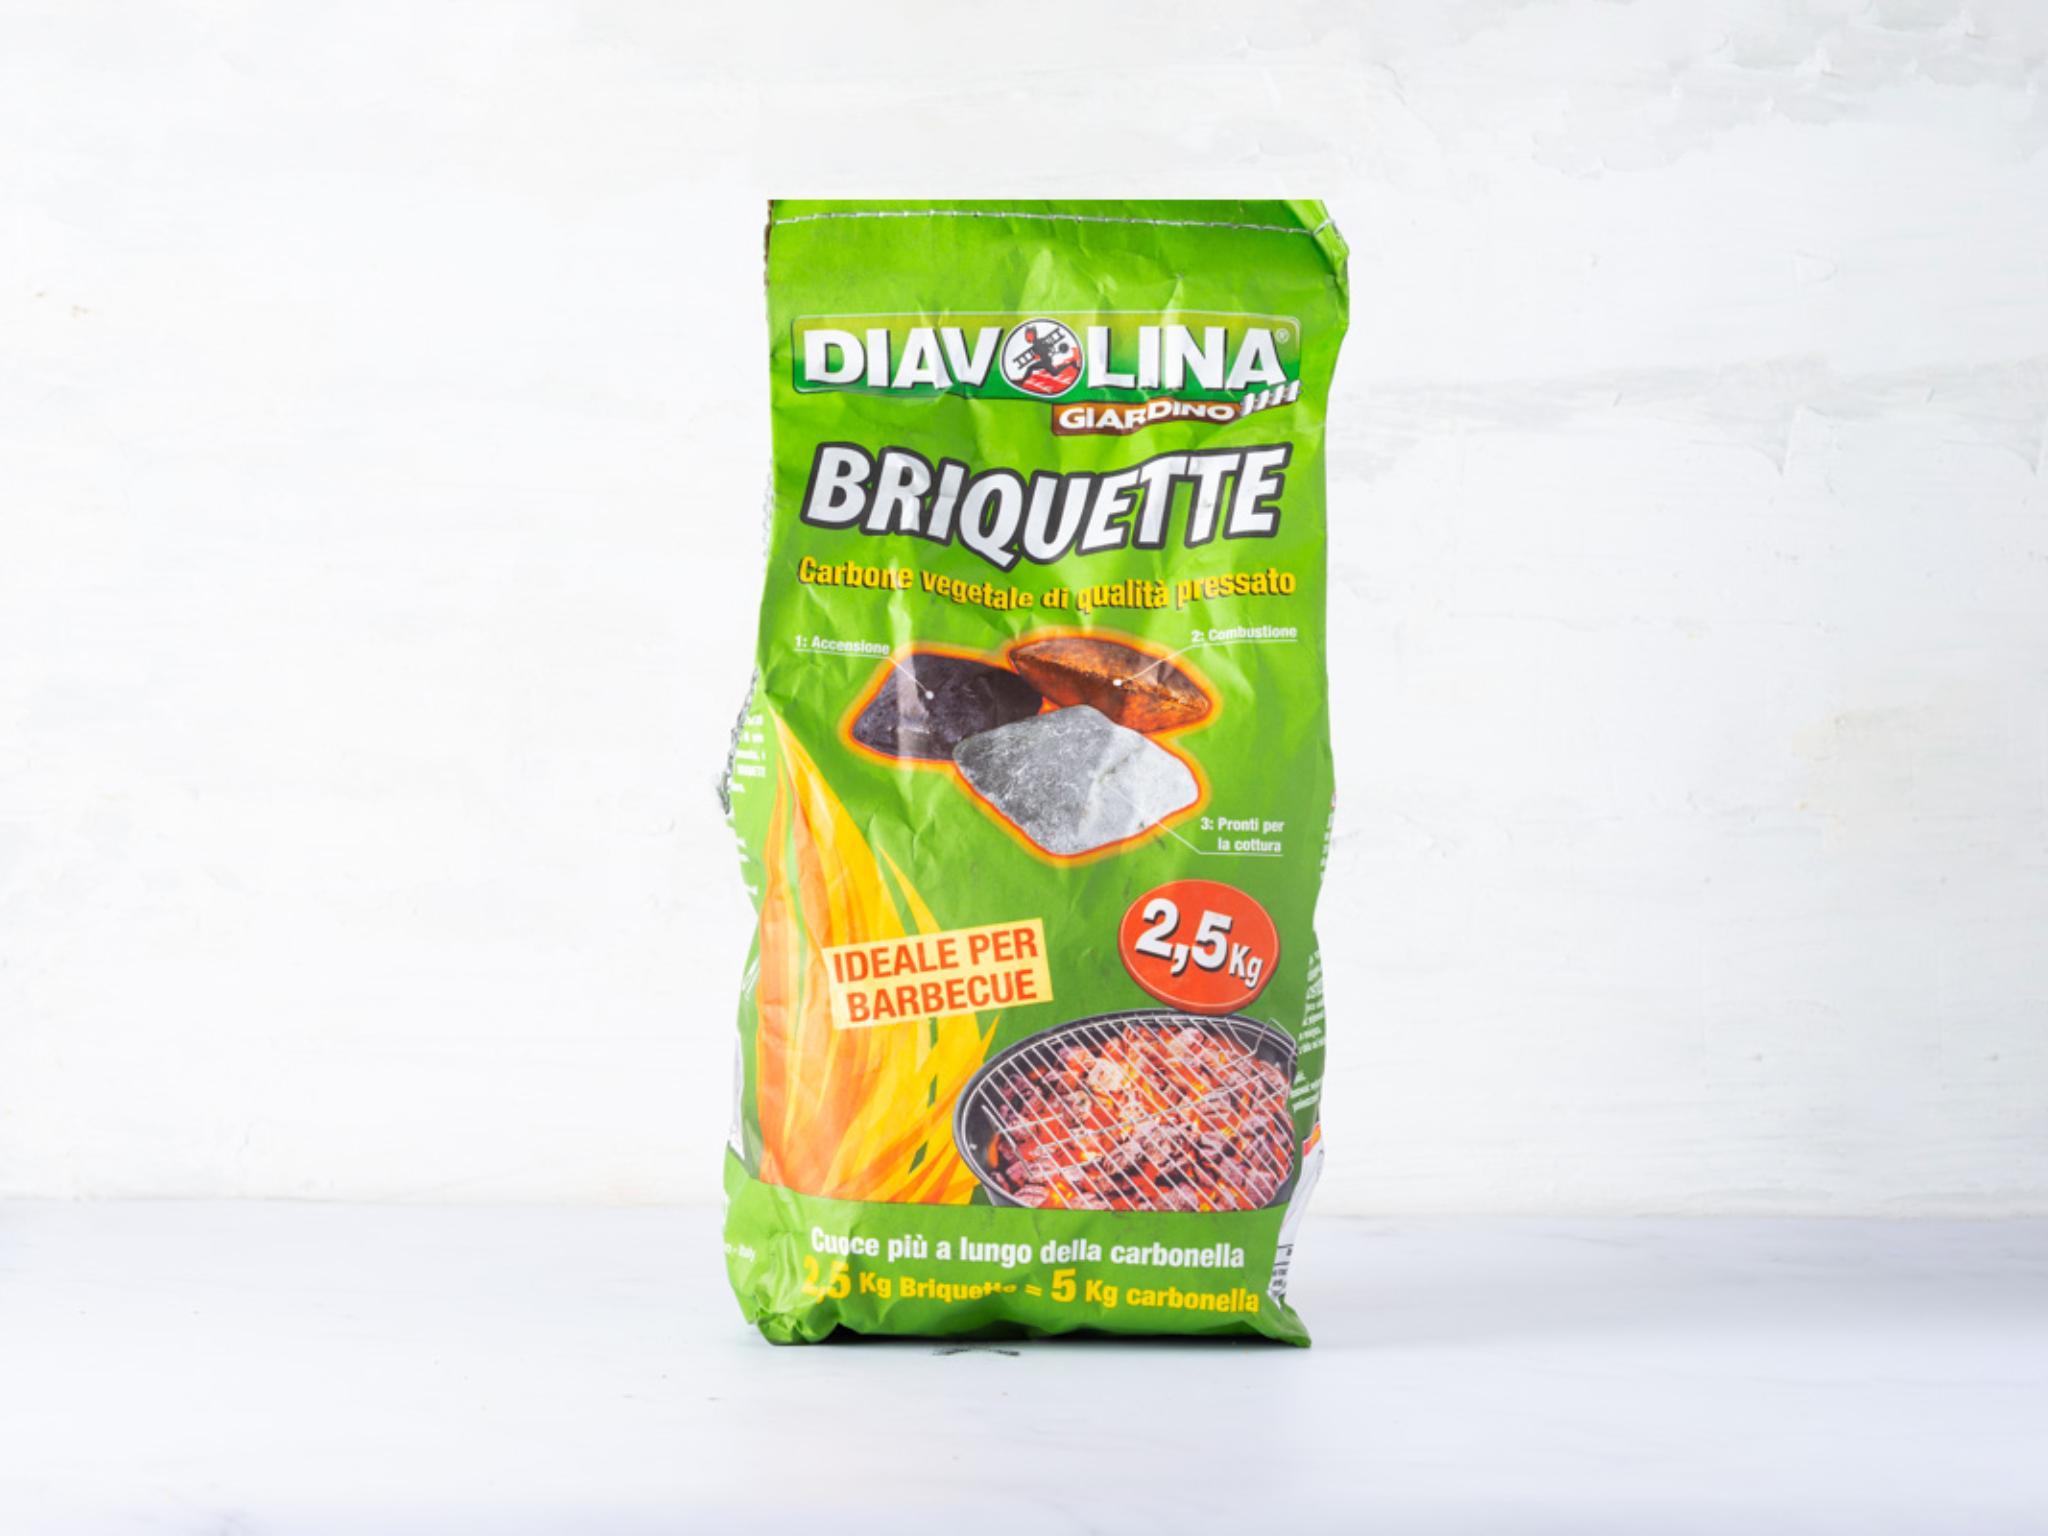 Briquette diavolina